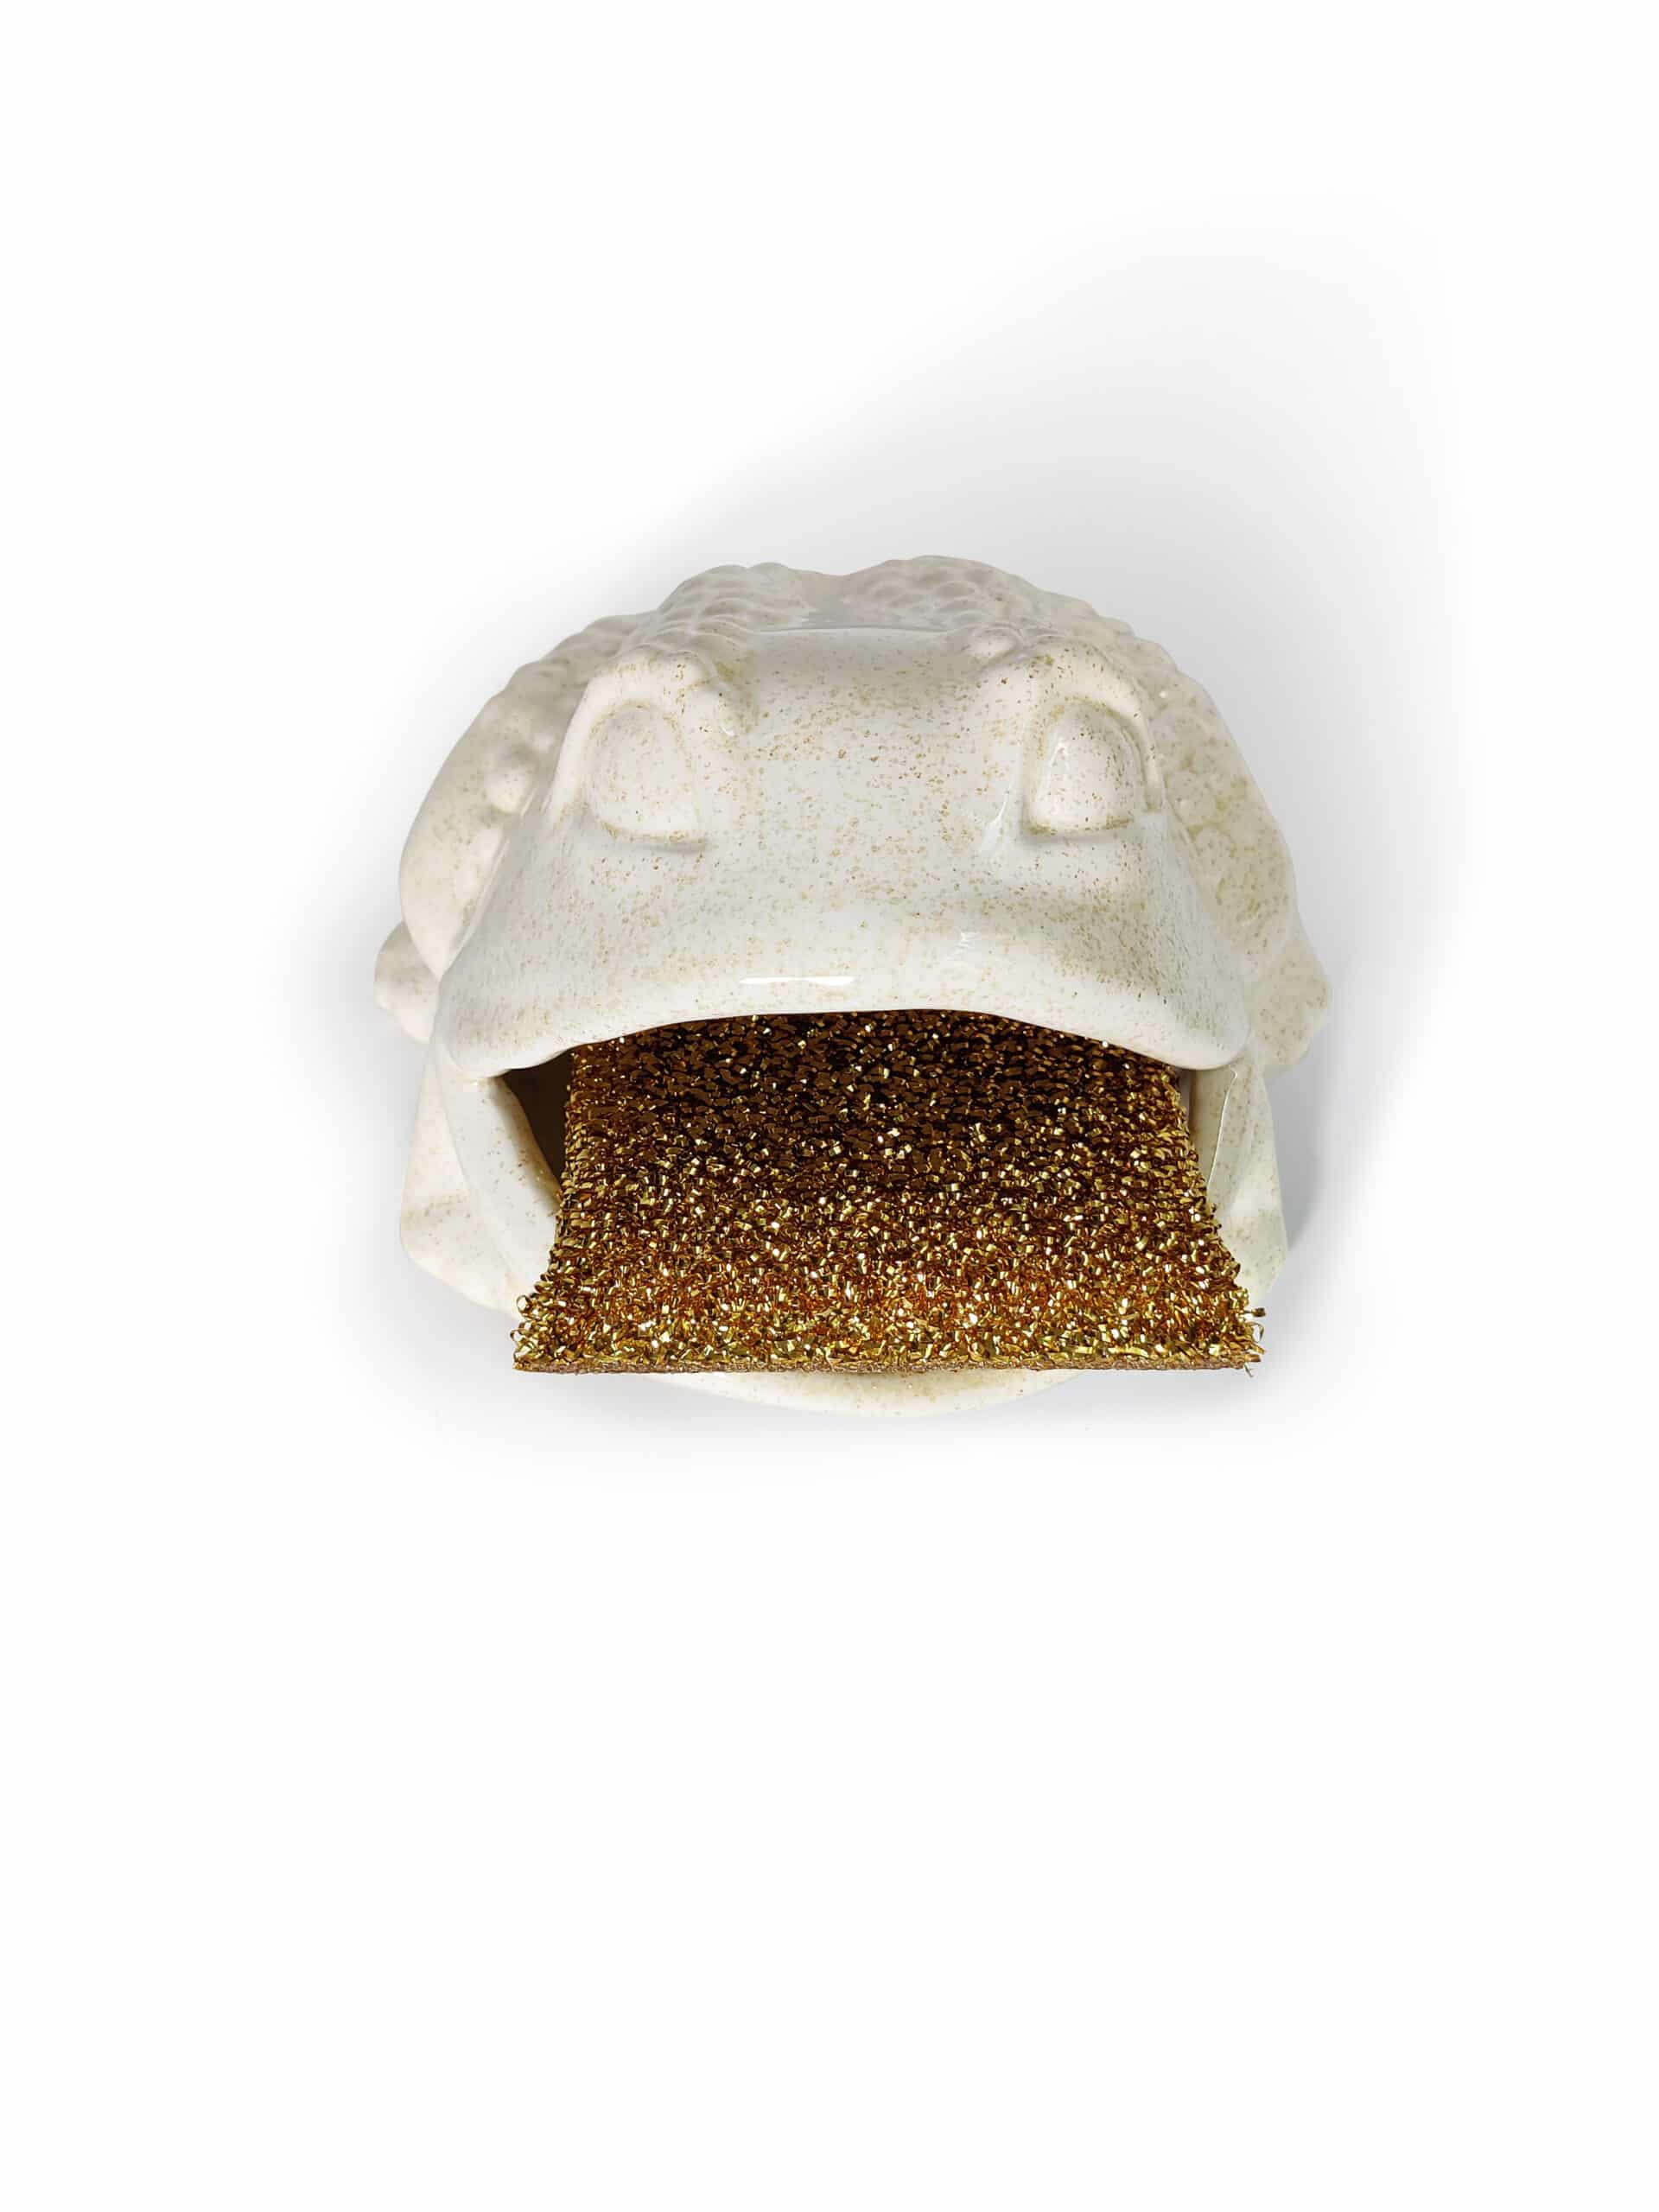 Ceramic Kitchen Sponge Holder Frog-Shaped